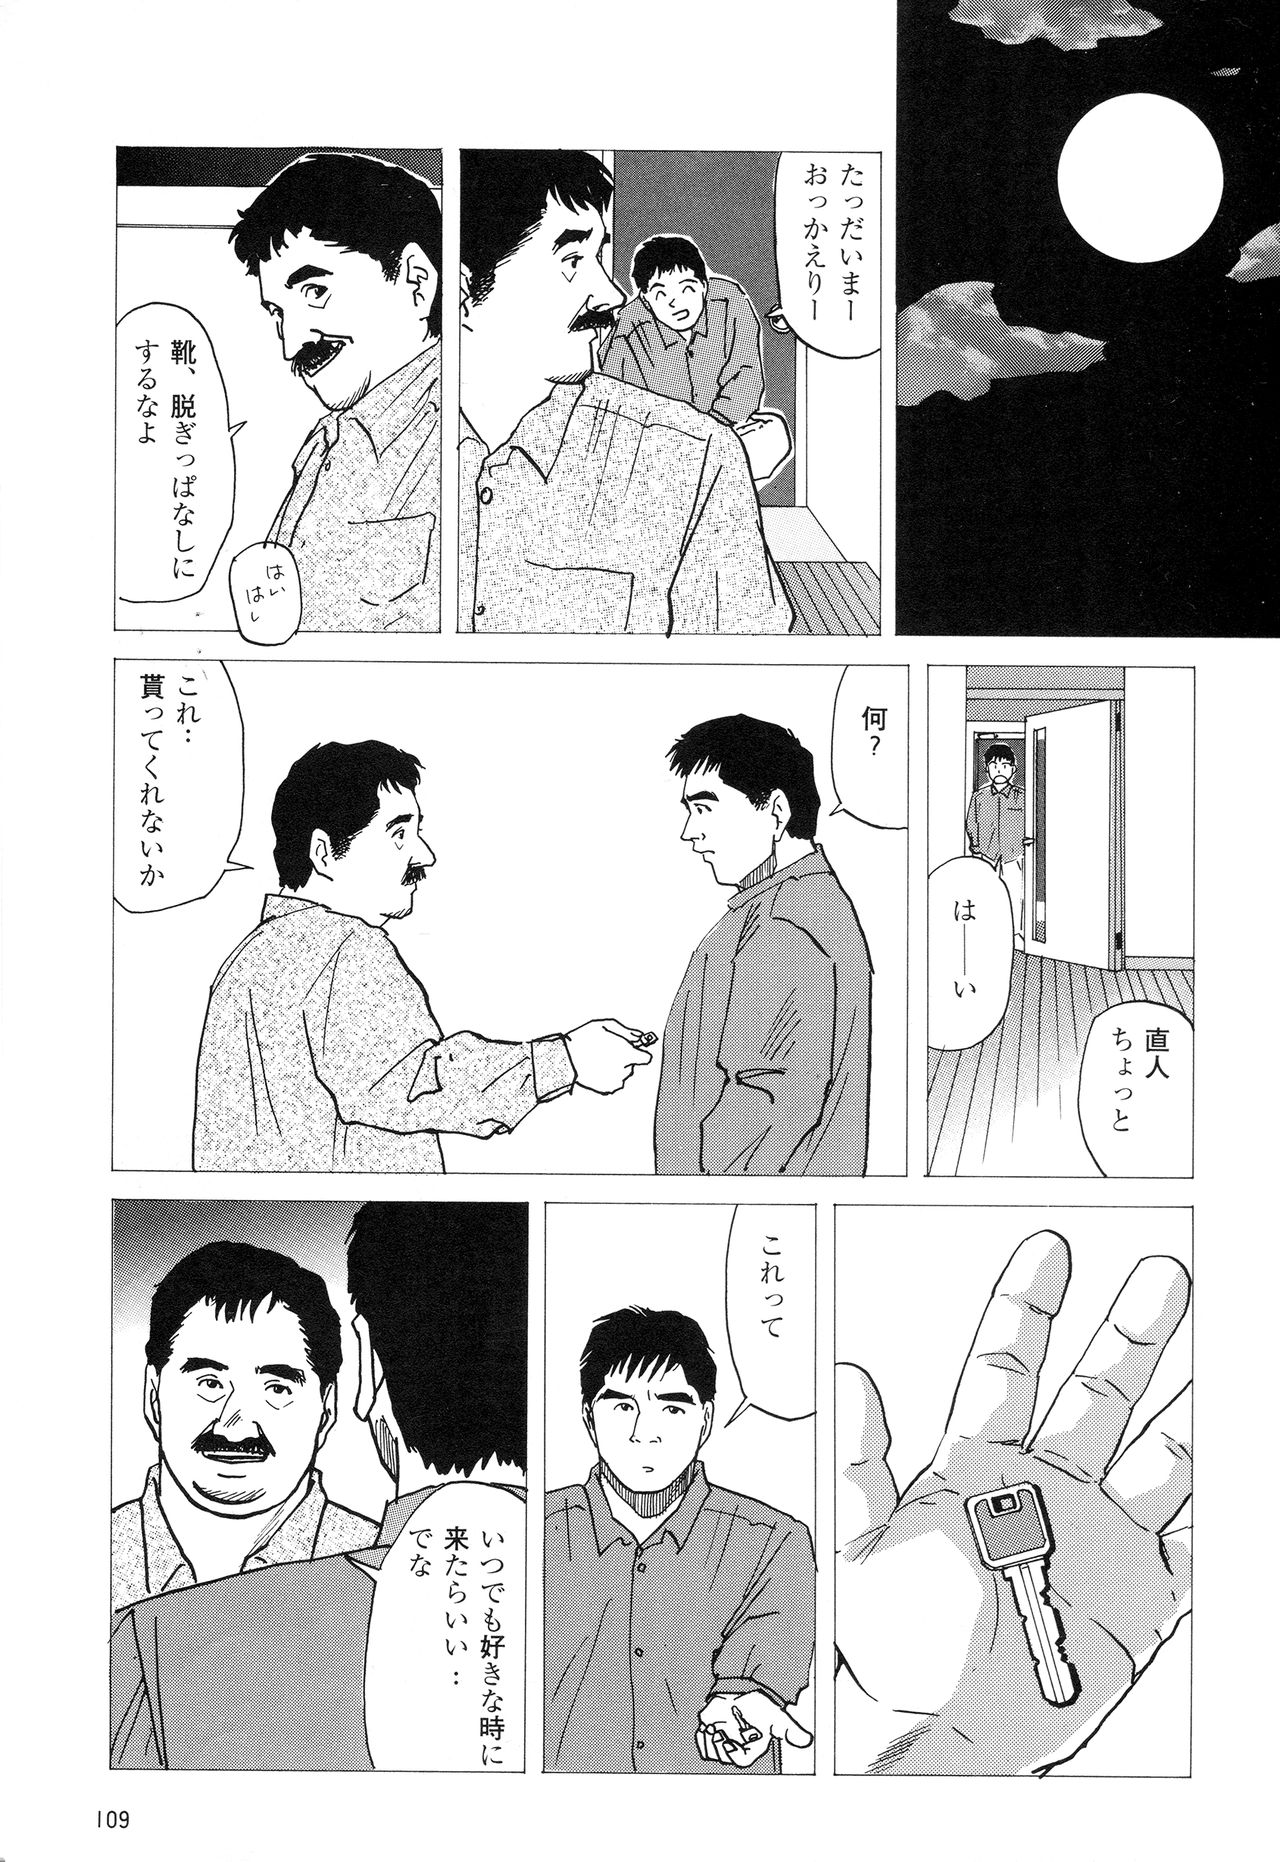 [上条毬男] みちくさ (G‐Men No.4 1994年11月25日)